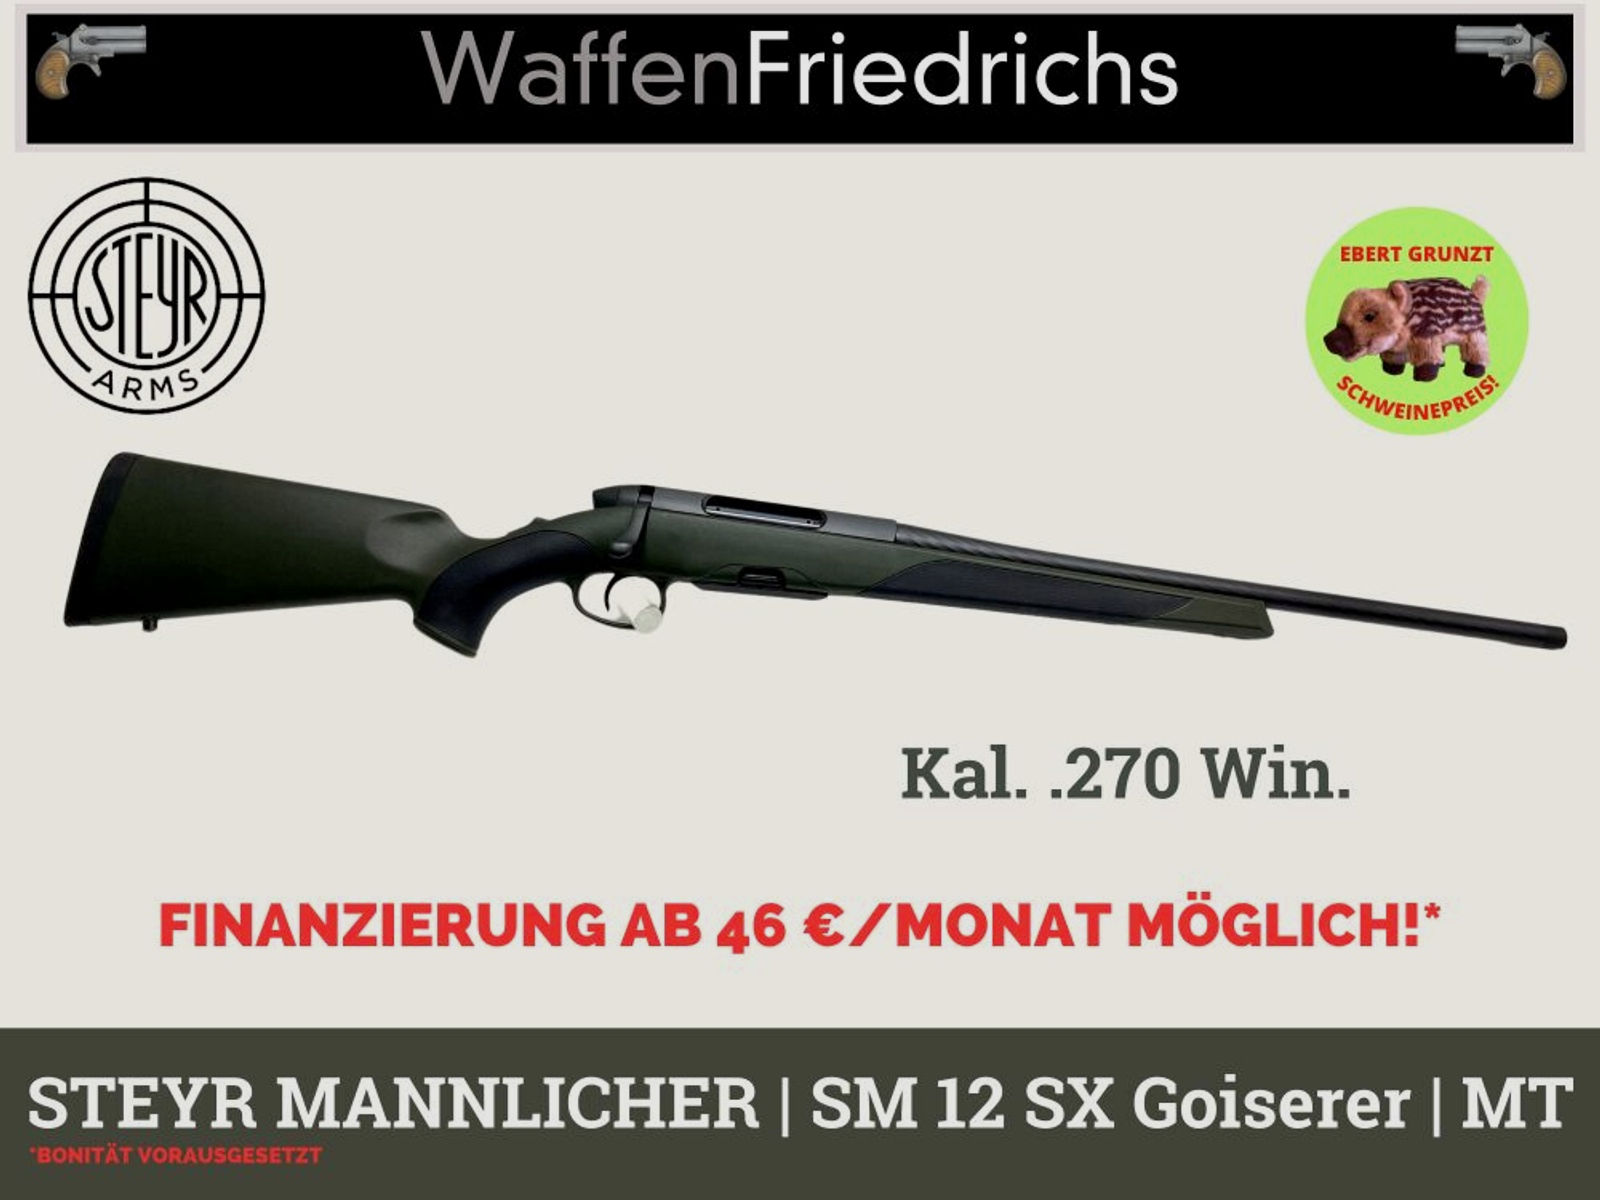 STEYR MANNLICHER	 SM 12 SX Goiserer - Waffen Friedrichs